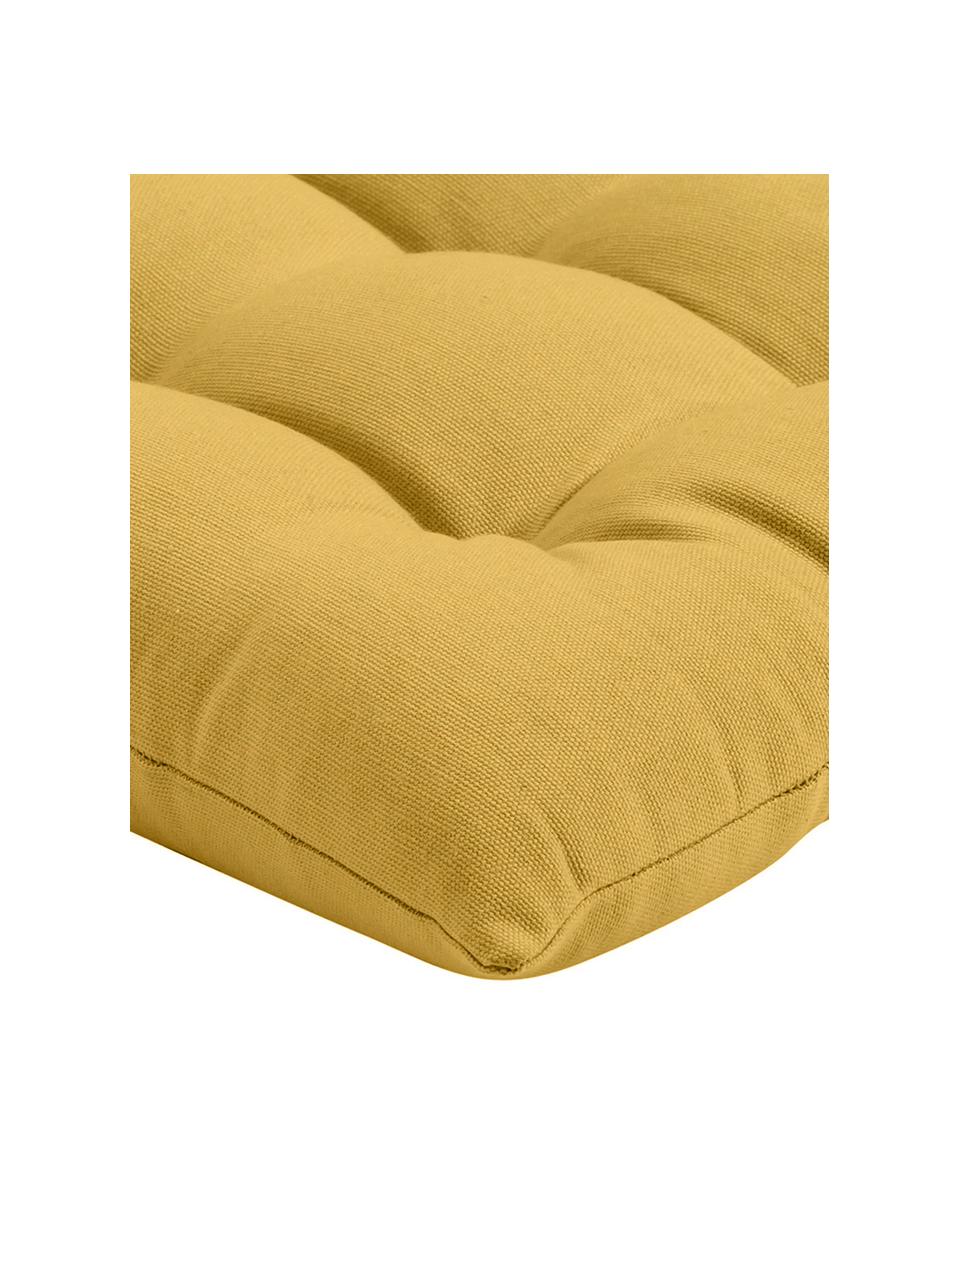 Katoenen stoelkussen Ava in geel, Geel, B 40 x L 40 cm